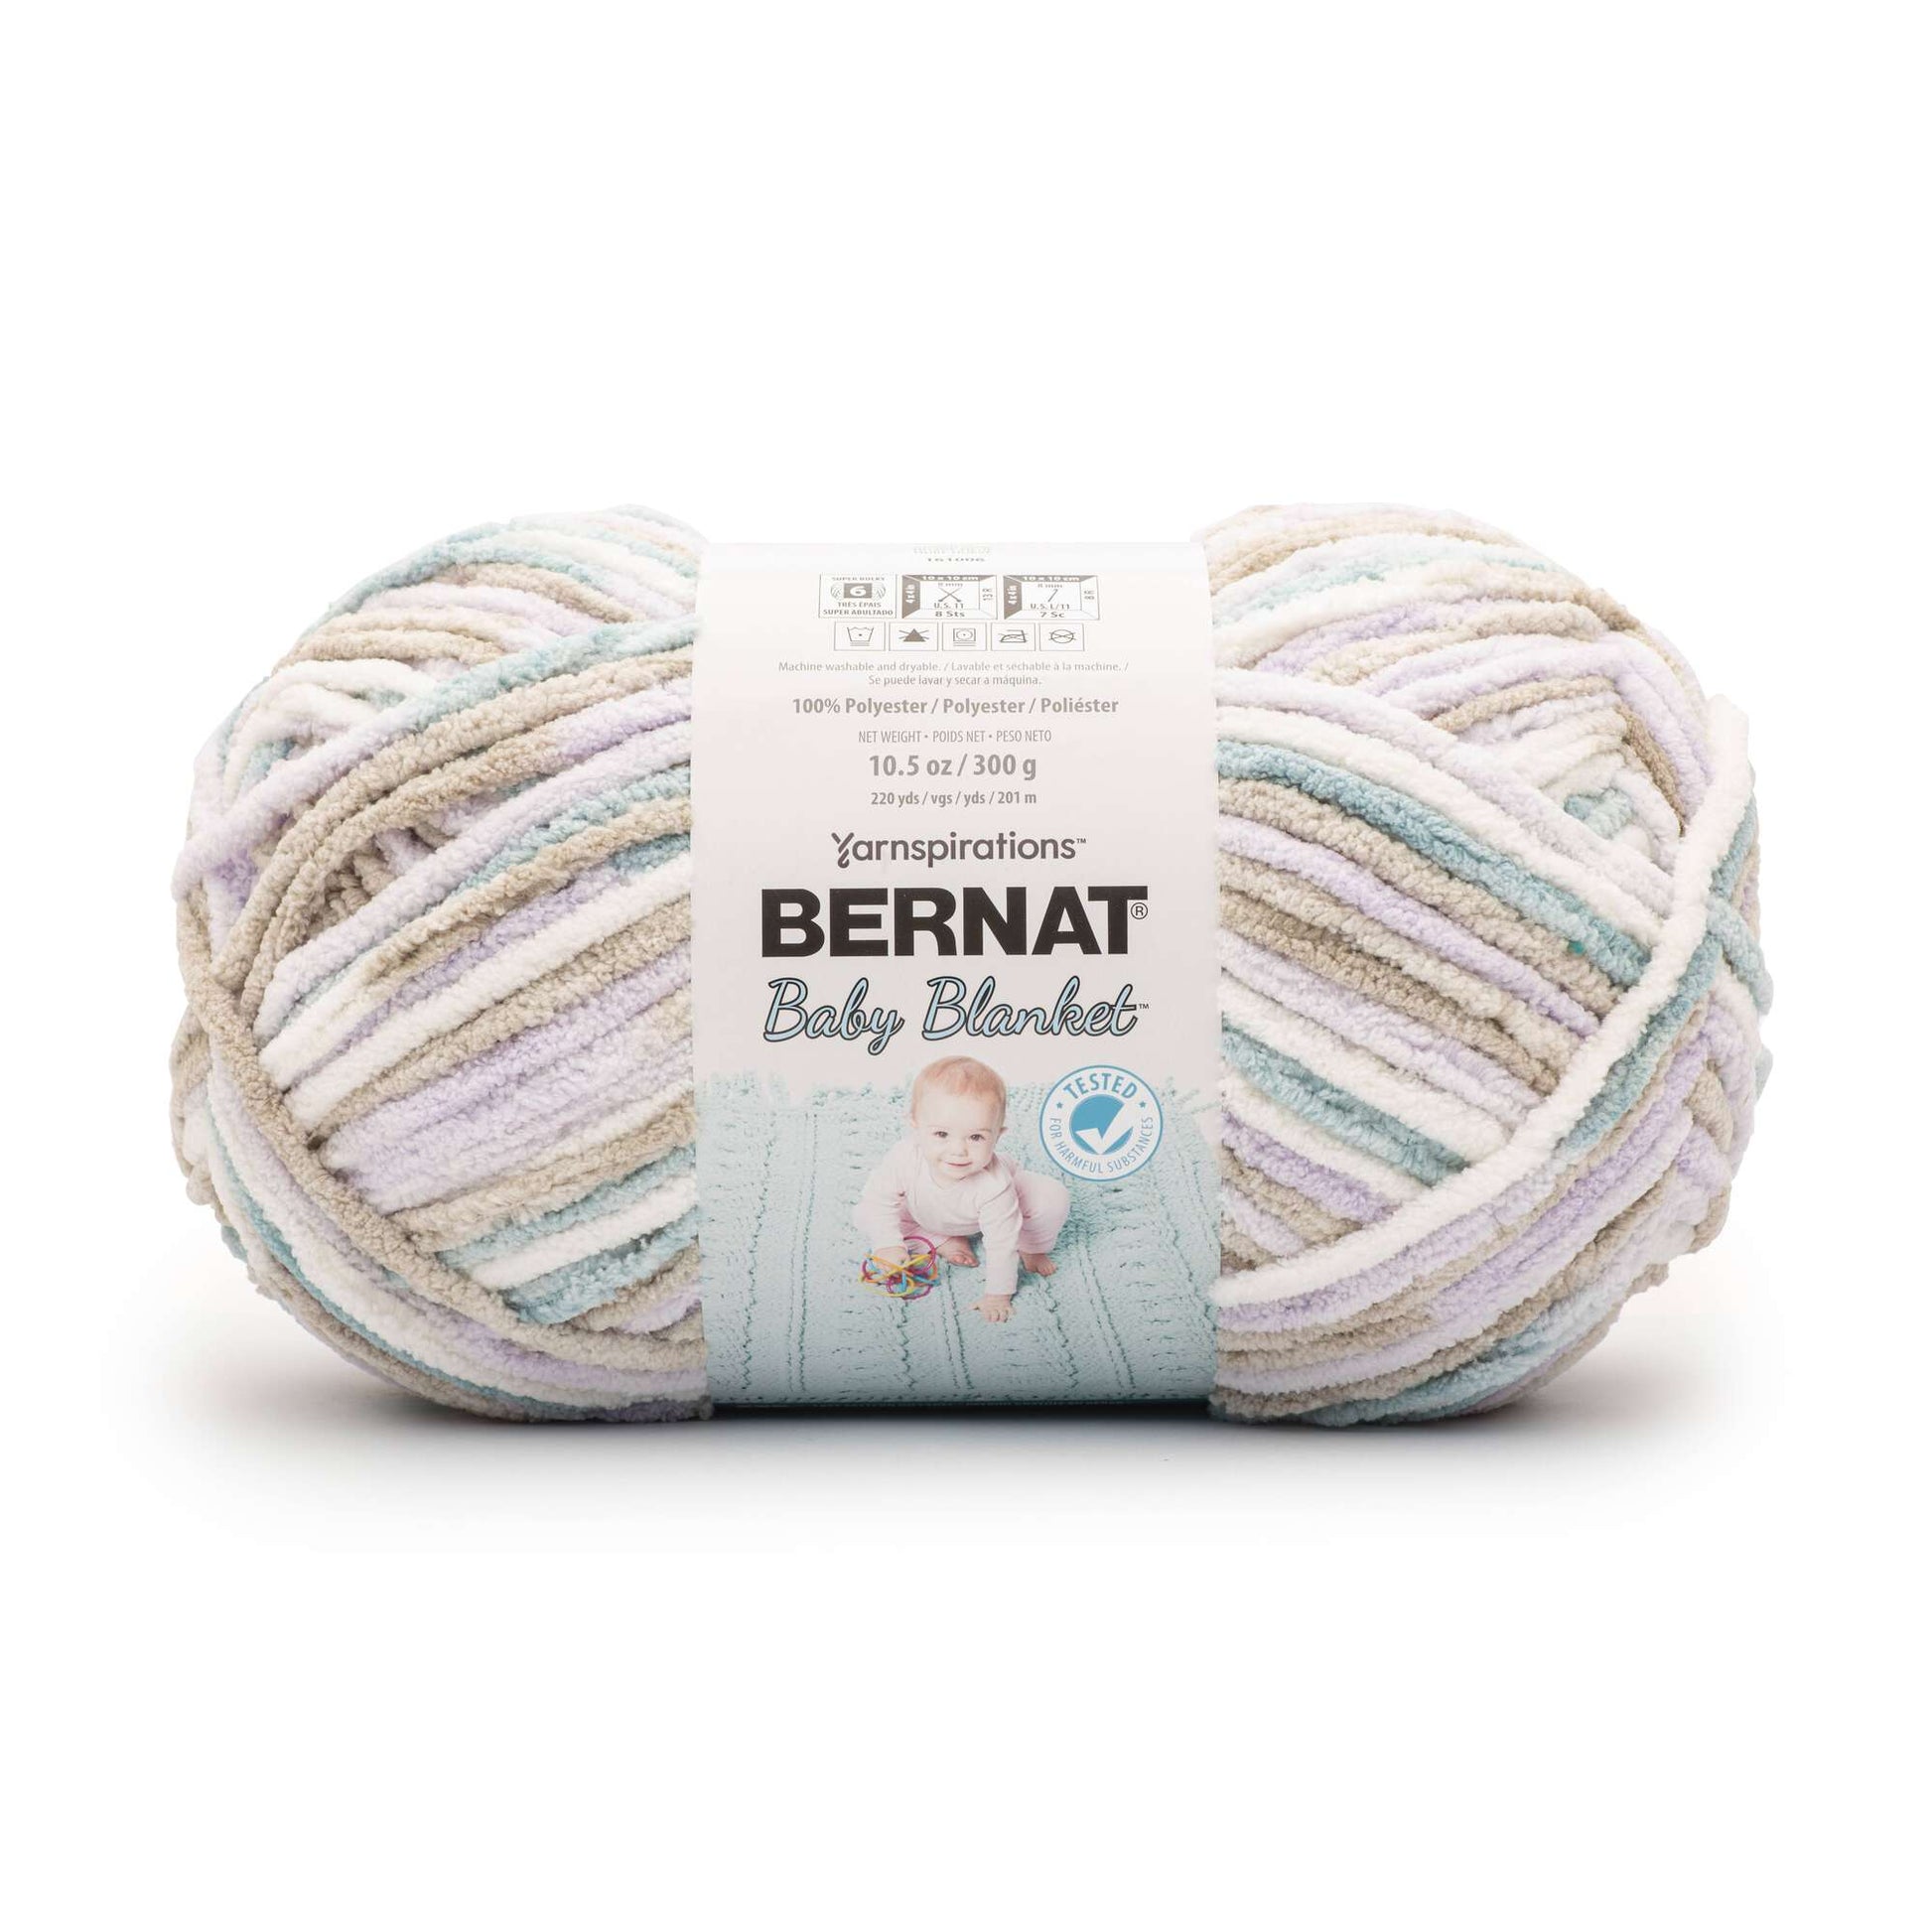 Bernat Baby Blanket Big Ball Yarn - Vanilla